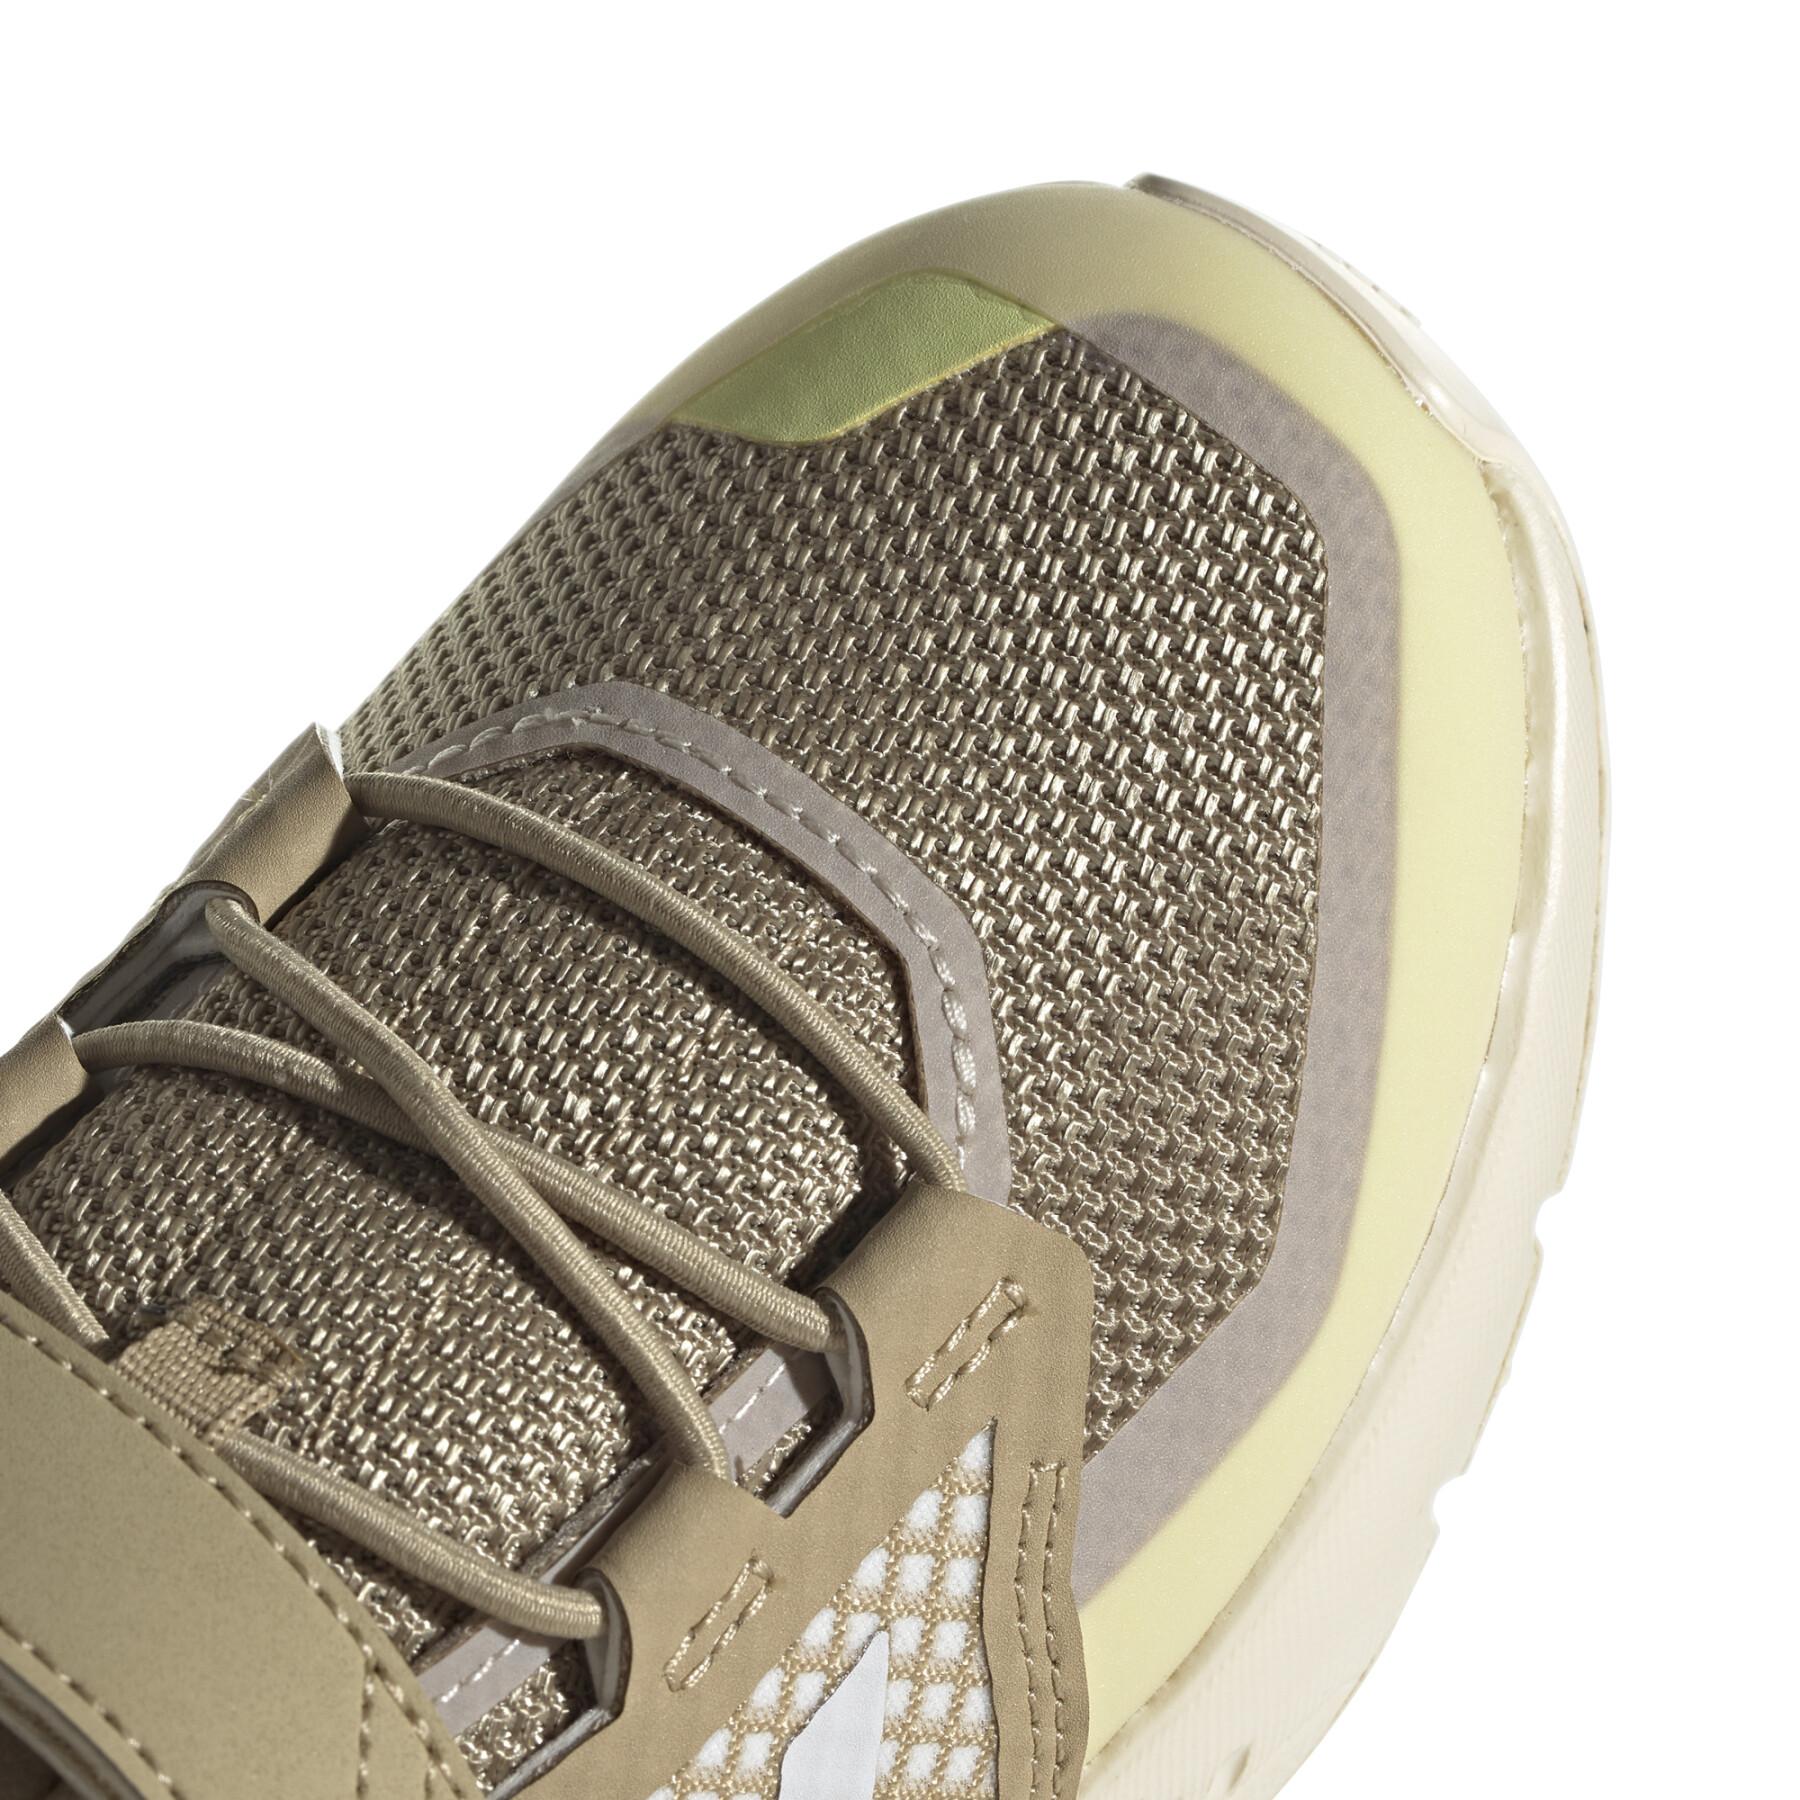 Zapatos de senderismo para niños adidas Terrex Trailmaker